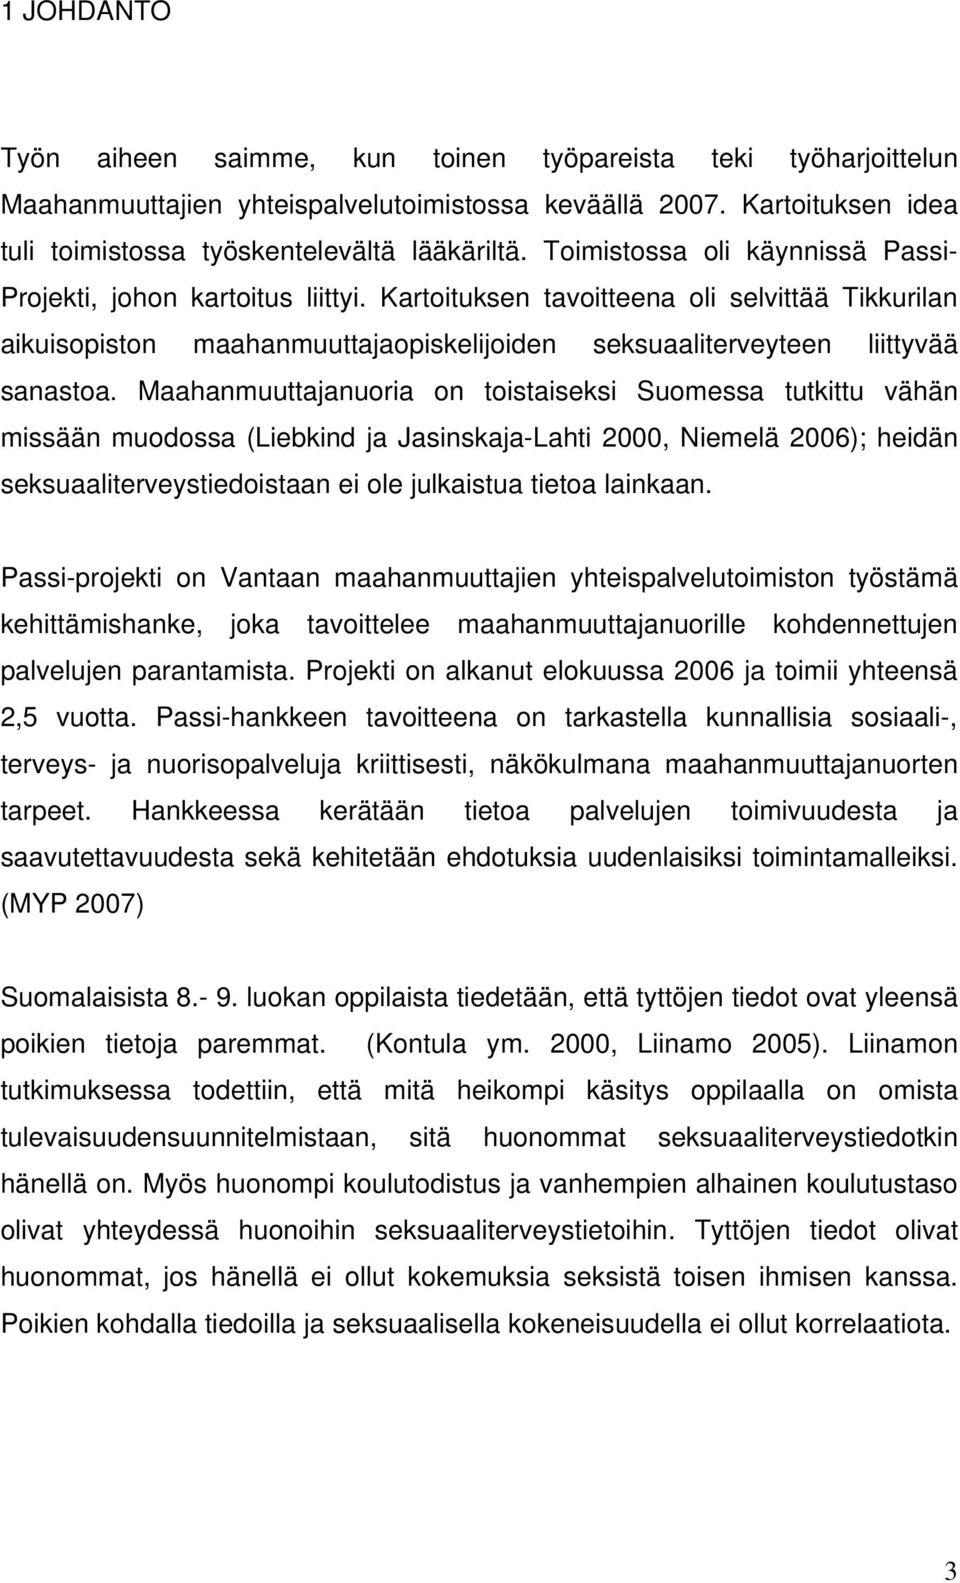 Maahanmuuttajanuoria on toistaiseksi Suomessa tutkittu vähän missään muodossa (Liebkind ja Jasinskaja-Lahti 2000, Niemelä 2006); heidän seksuaaliterveystiedoistaan ei ole julkaistua tietoa lainkaan.